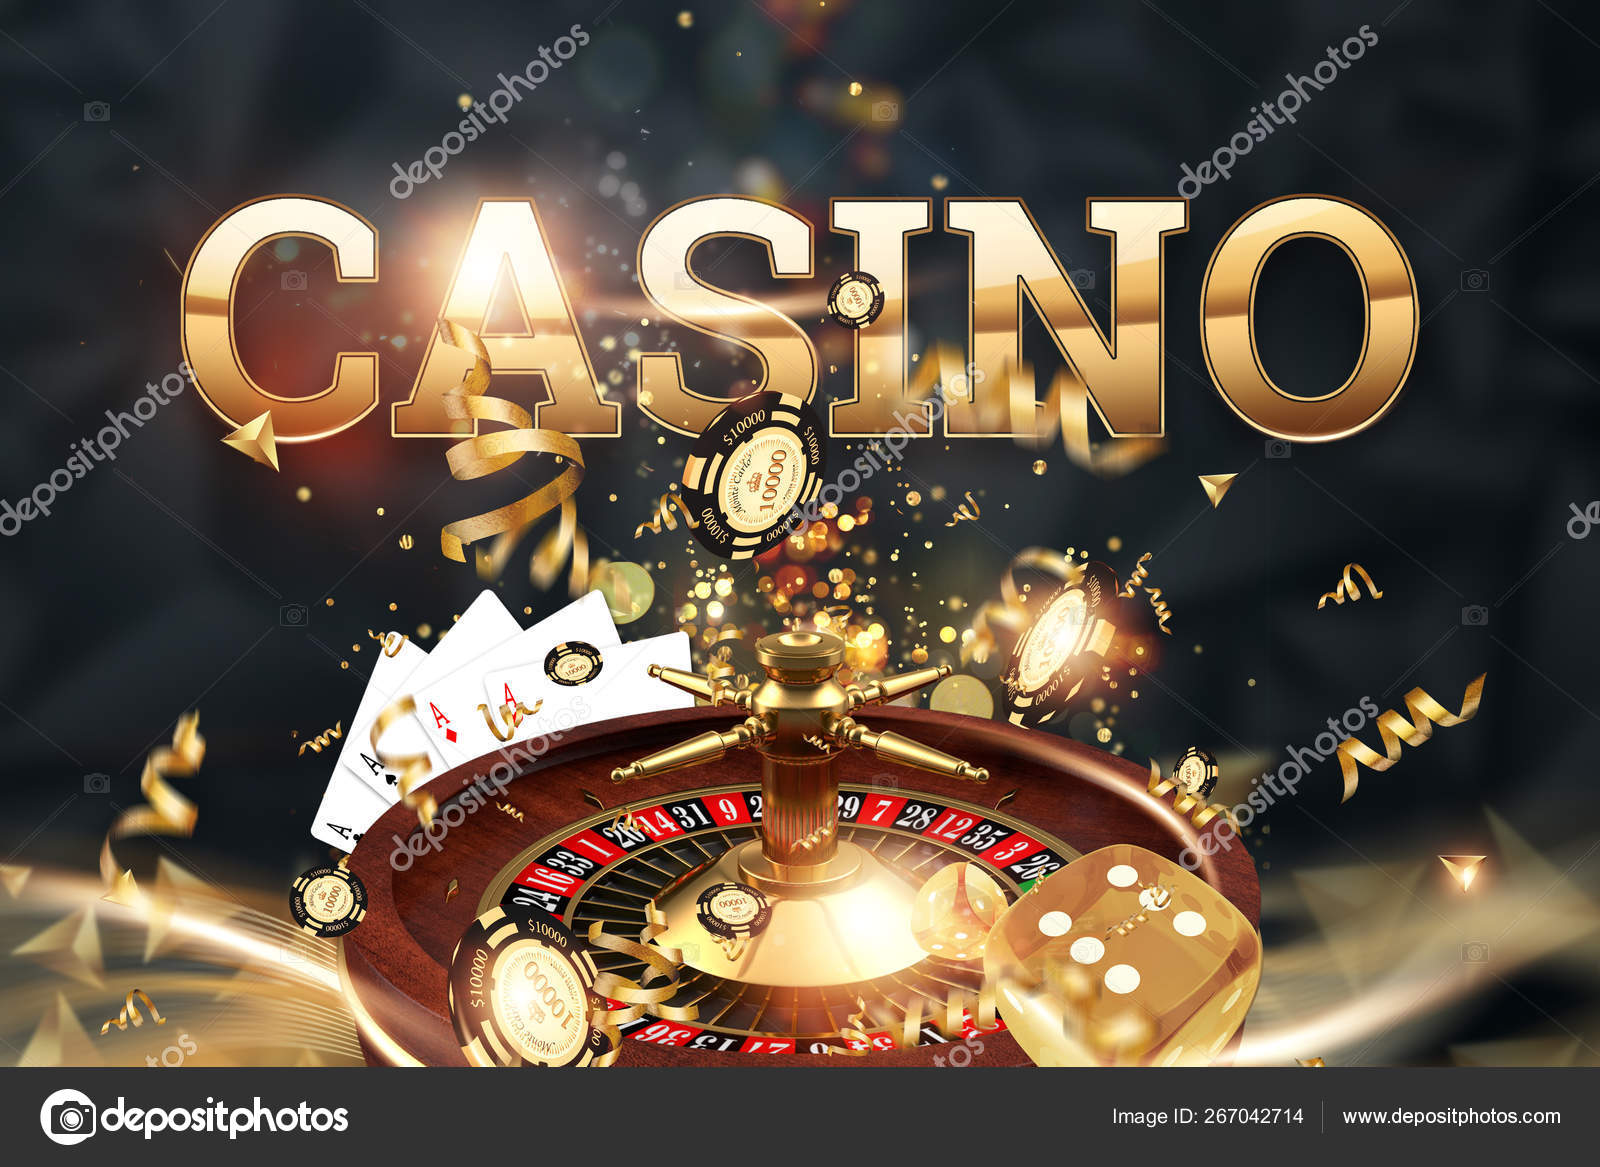 aajogo online casino